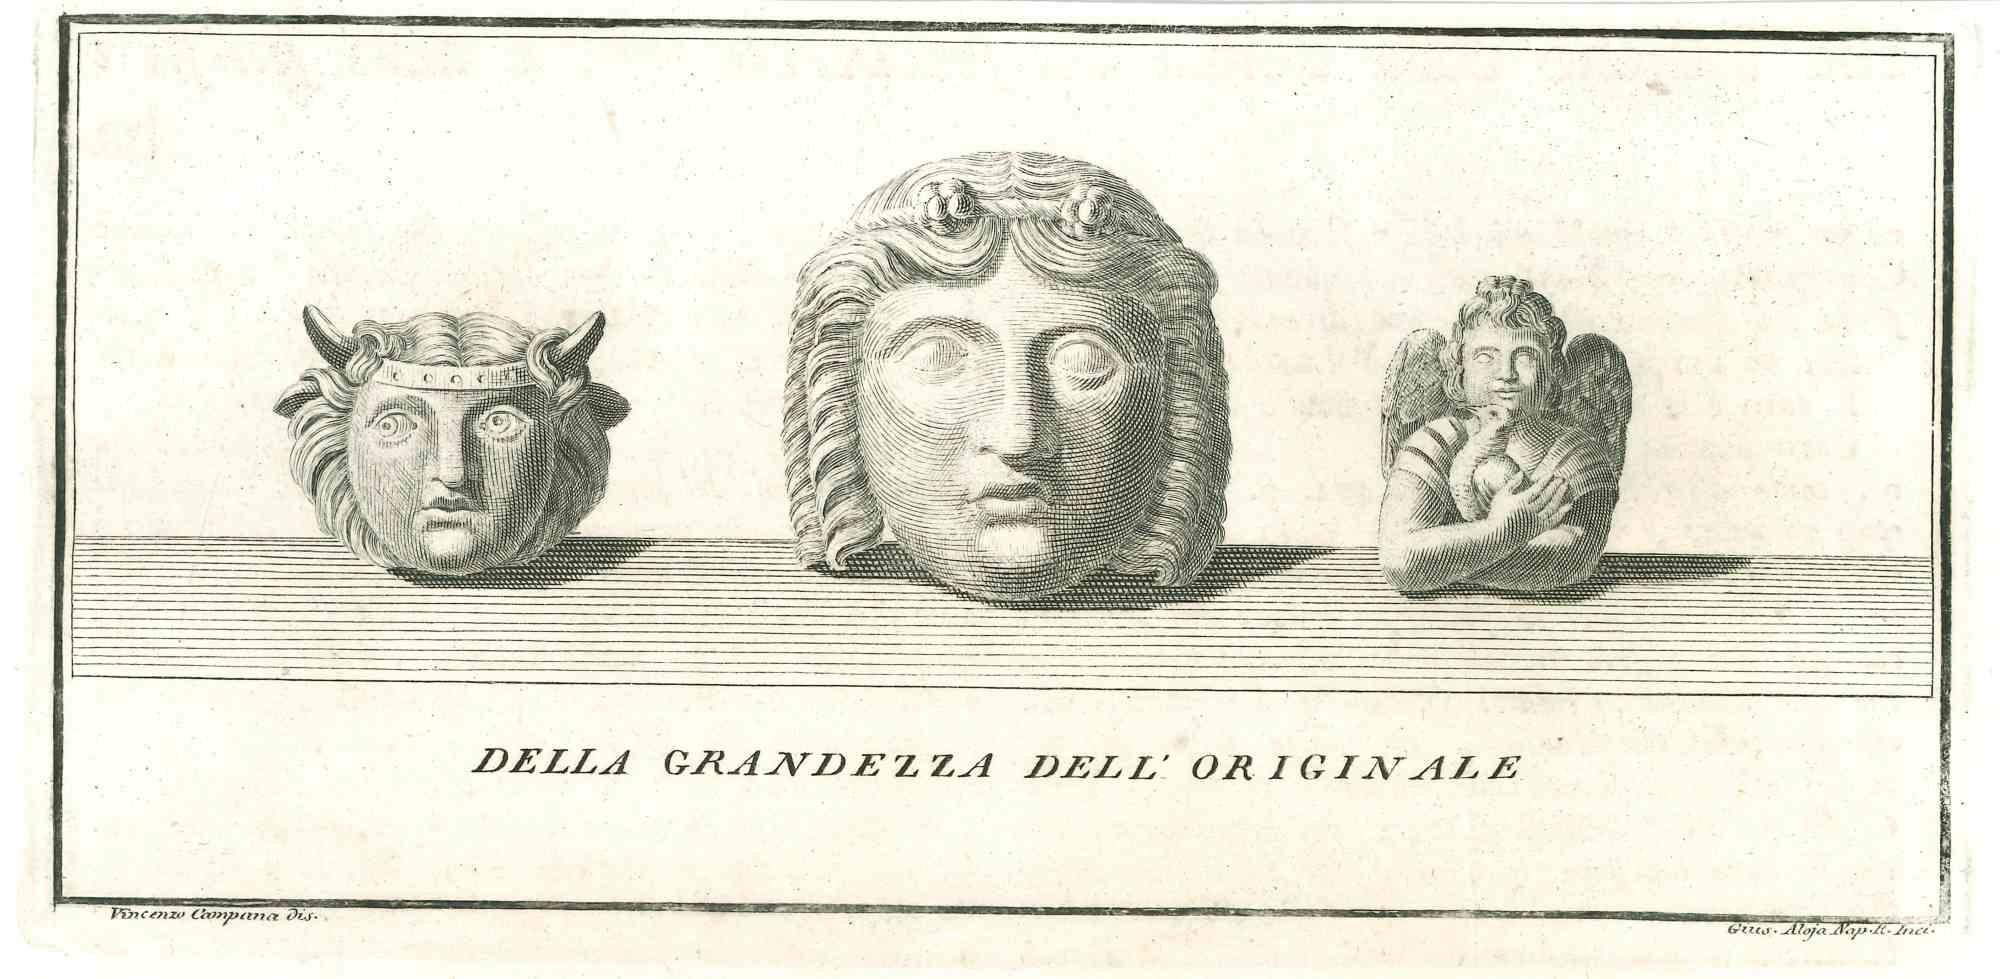 Statue romaine antique, de la série "Antiquités d'Herculanum", est une gravure originale sur papier réalisée par Vincenzo Aloja au XVIIIe siècle.

Signé sur la plaque en bas à droite

En bon état mais vieillis.

La gravure appartient à la suite